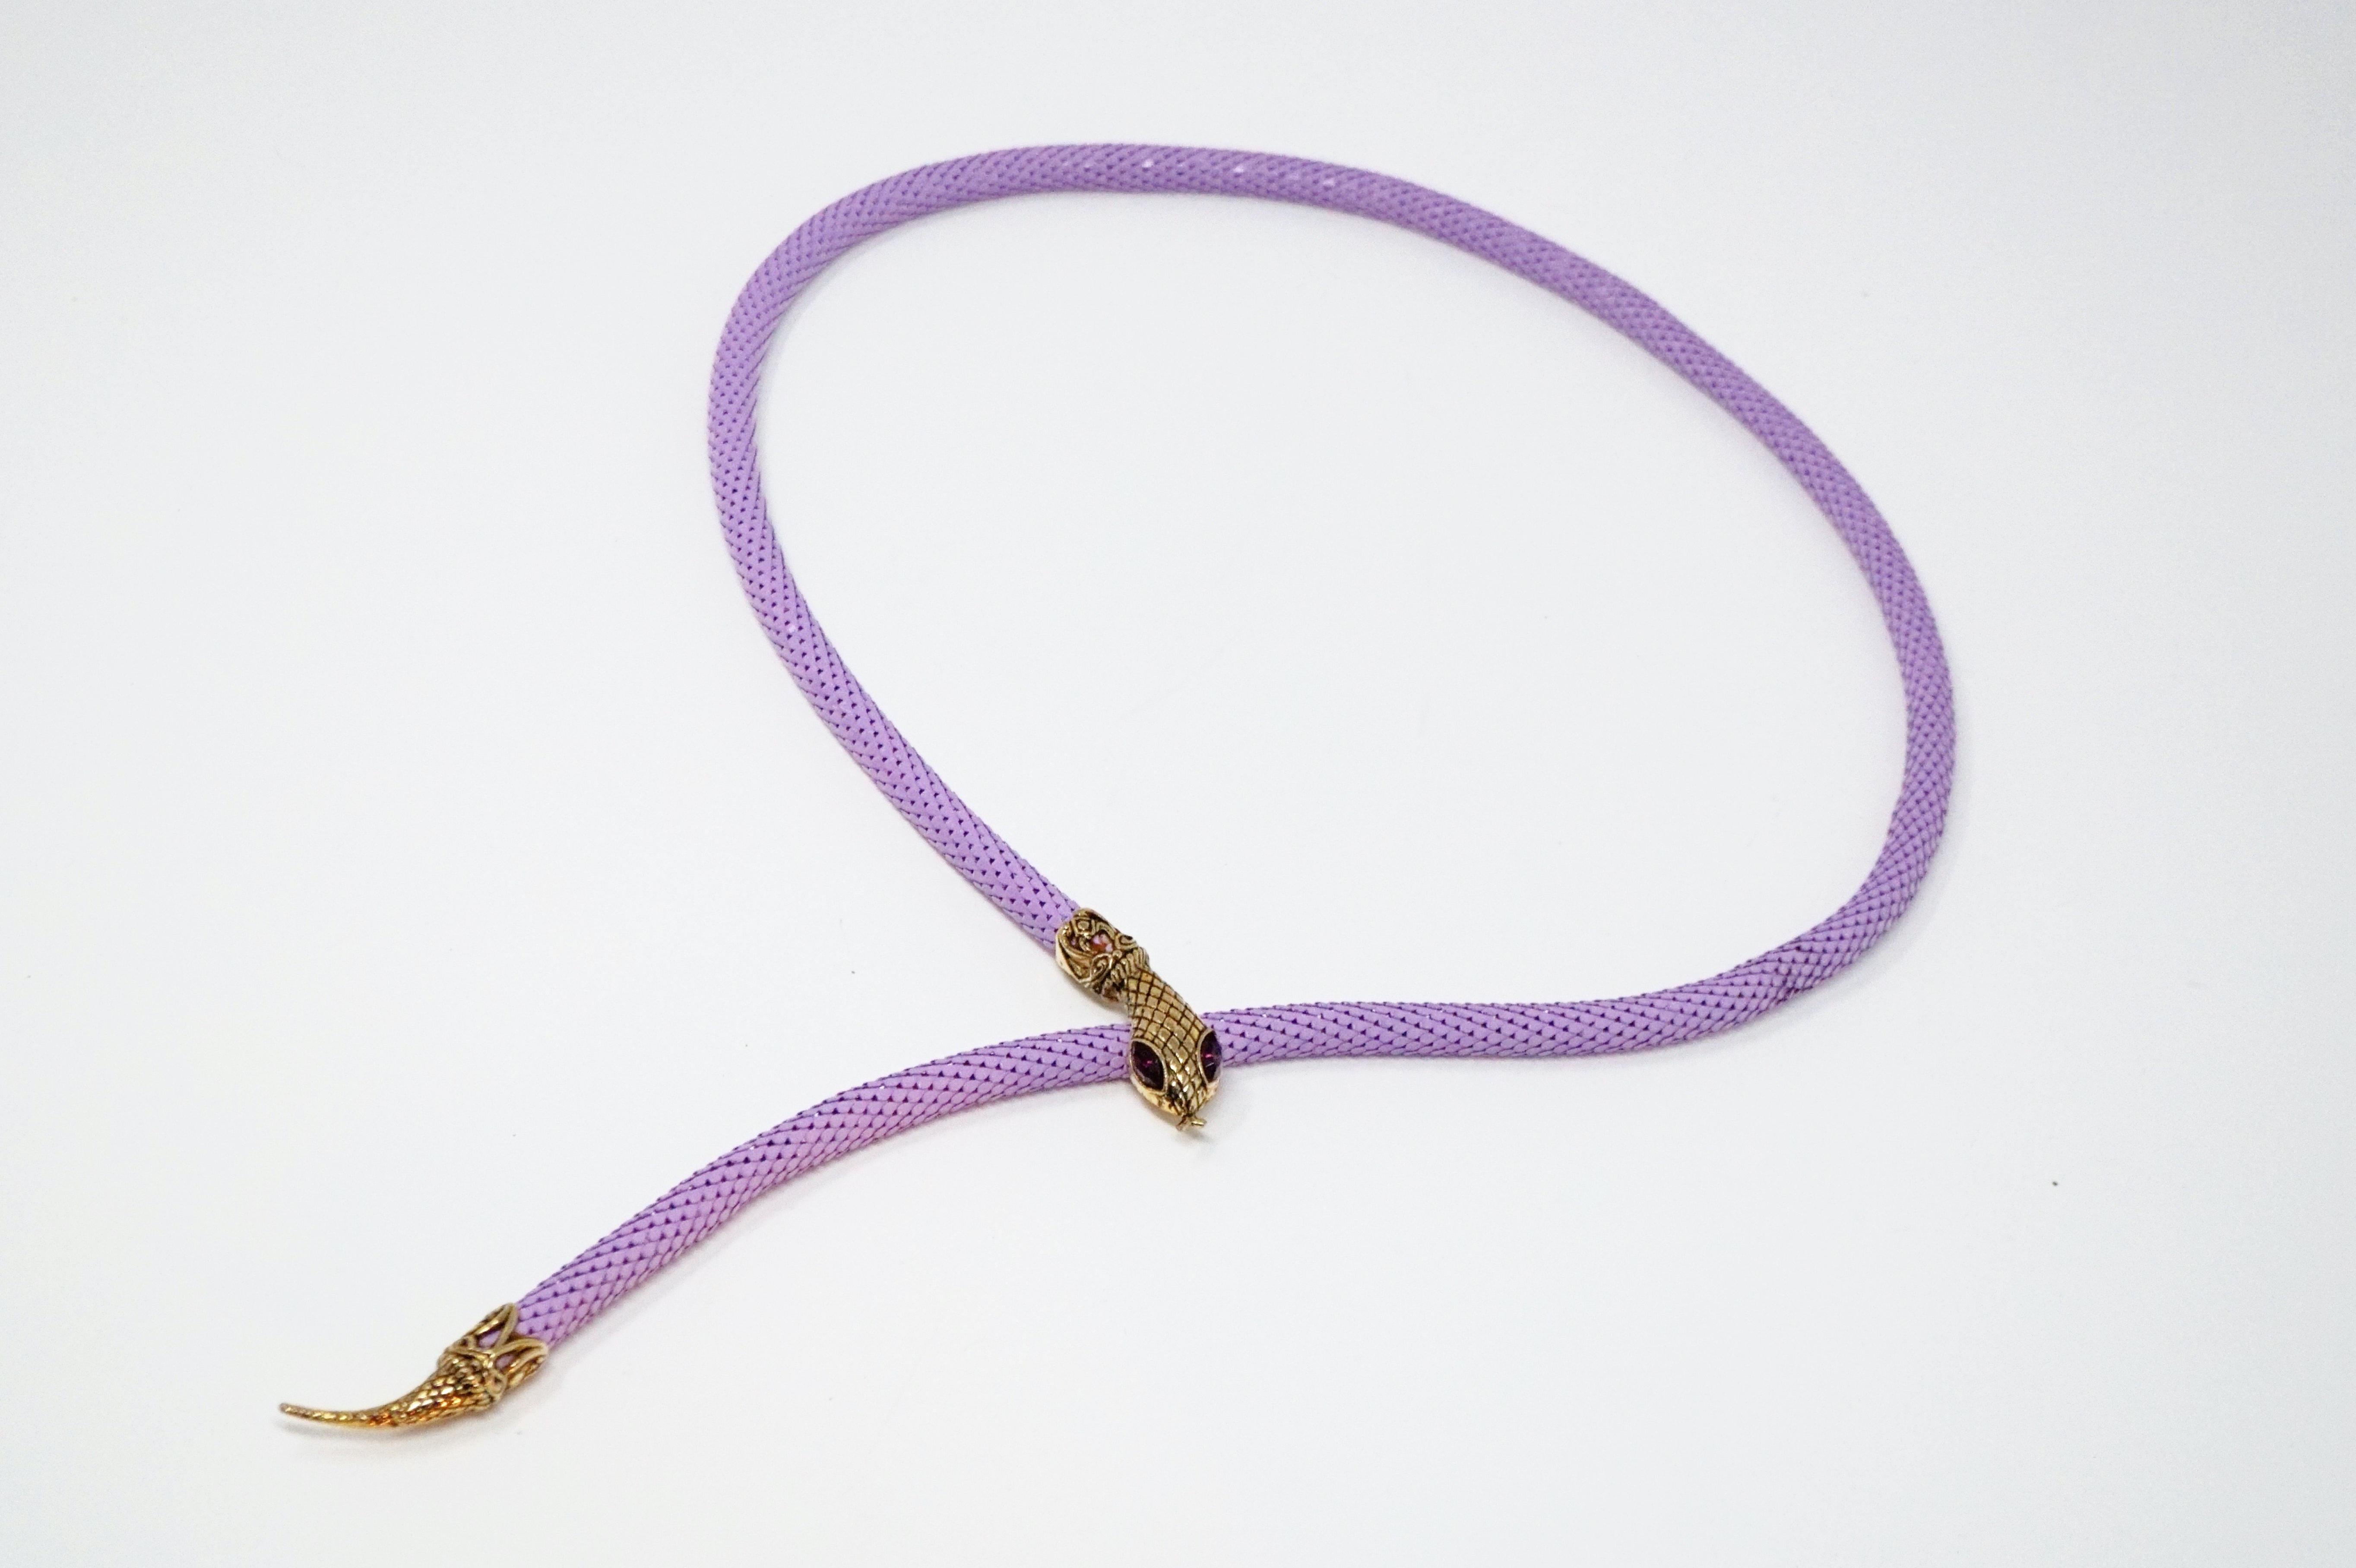 Purple 1980s Lavender Mesh Snake Belt or Necklace by DL Auld Co, Signed